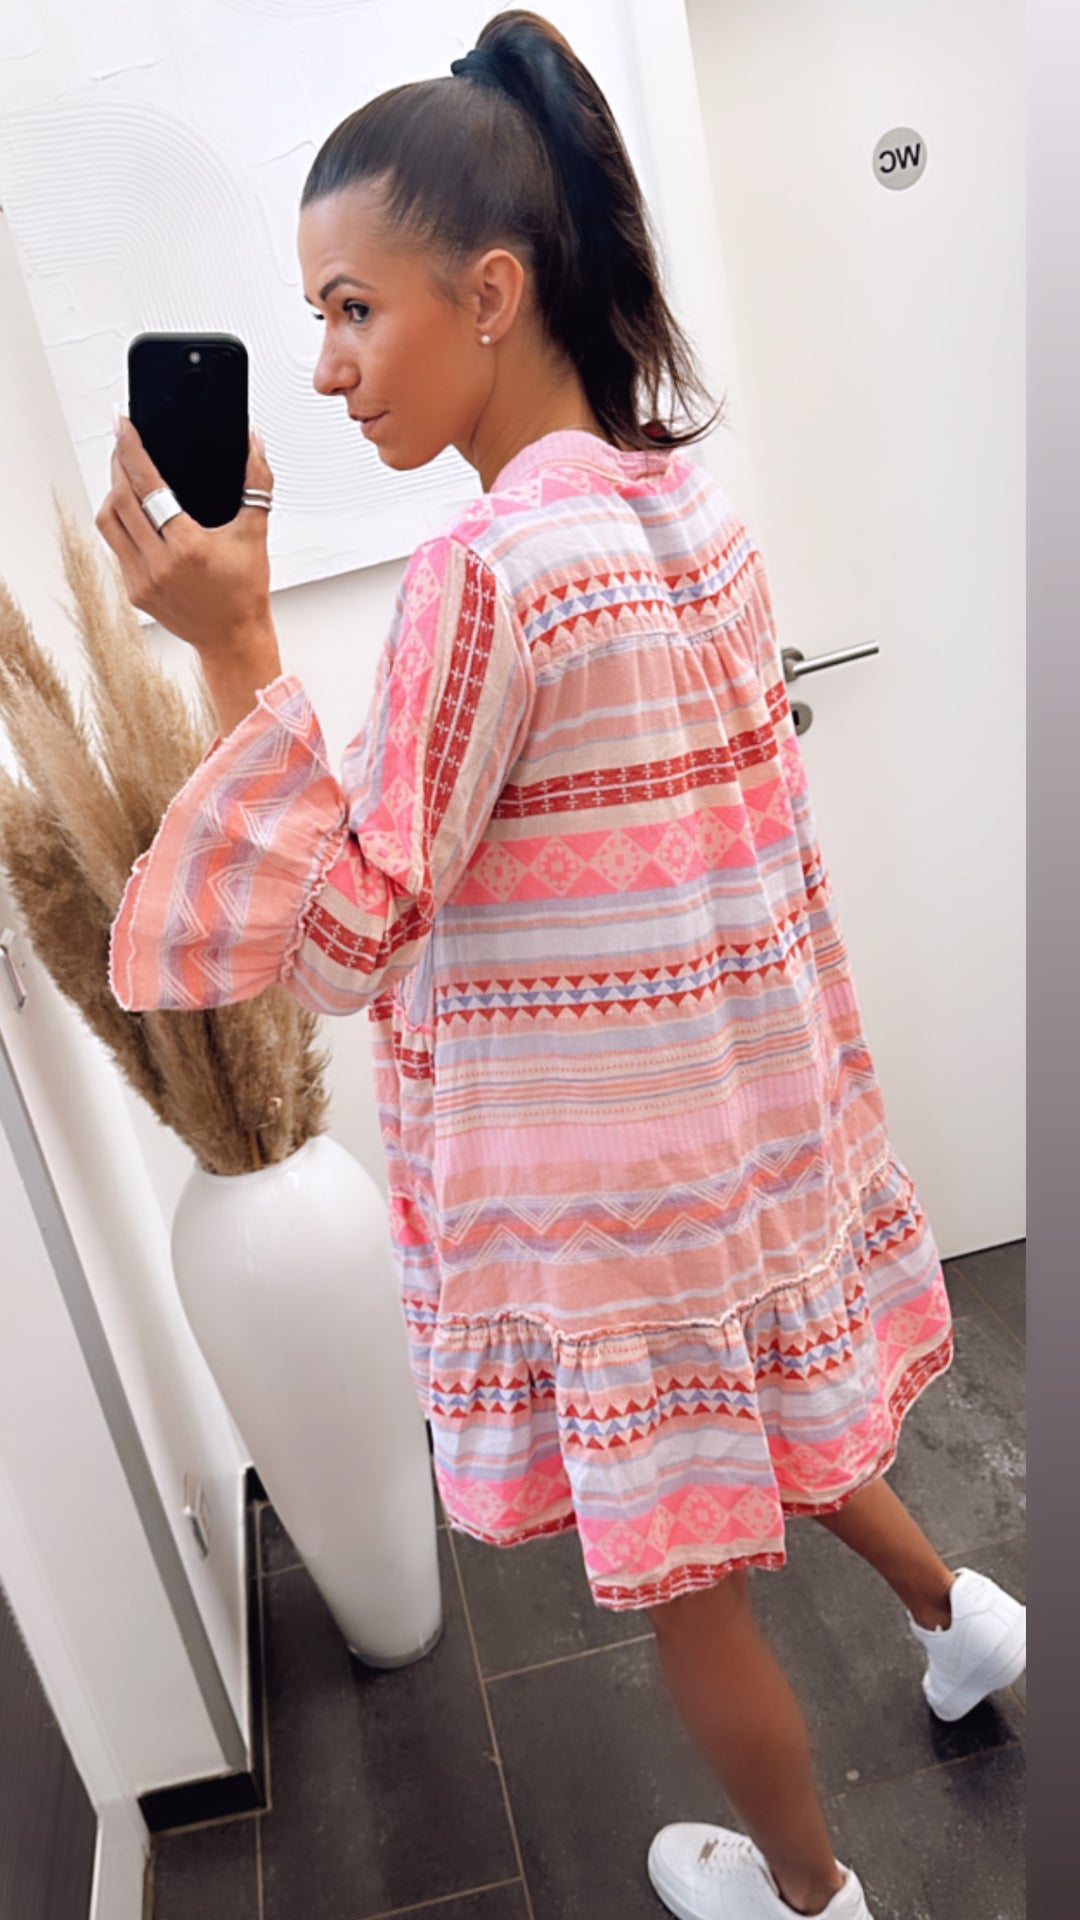 Tunika / Kleid in sommerlichem Muster und Farben / pink Töne  Art. 5906